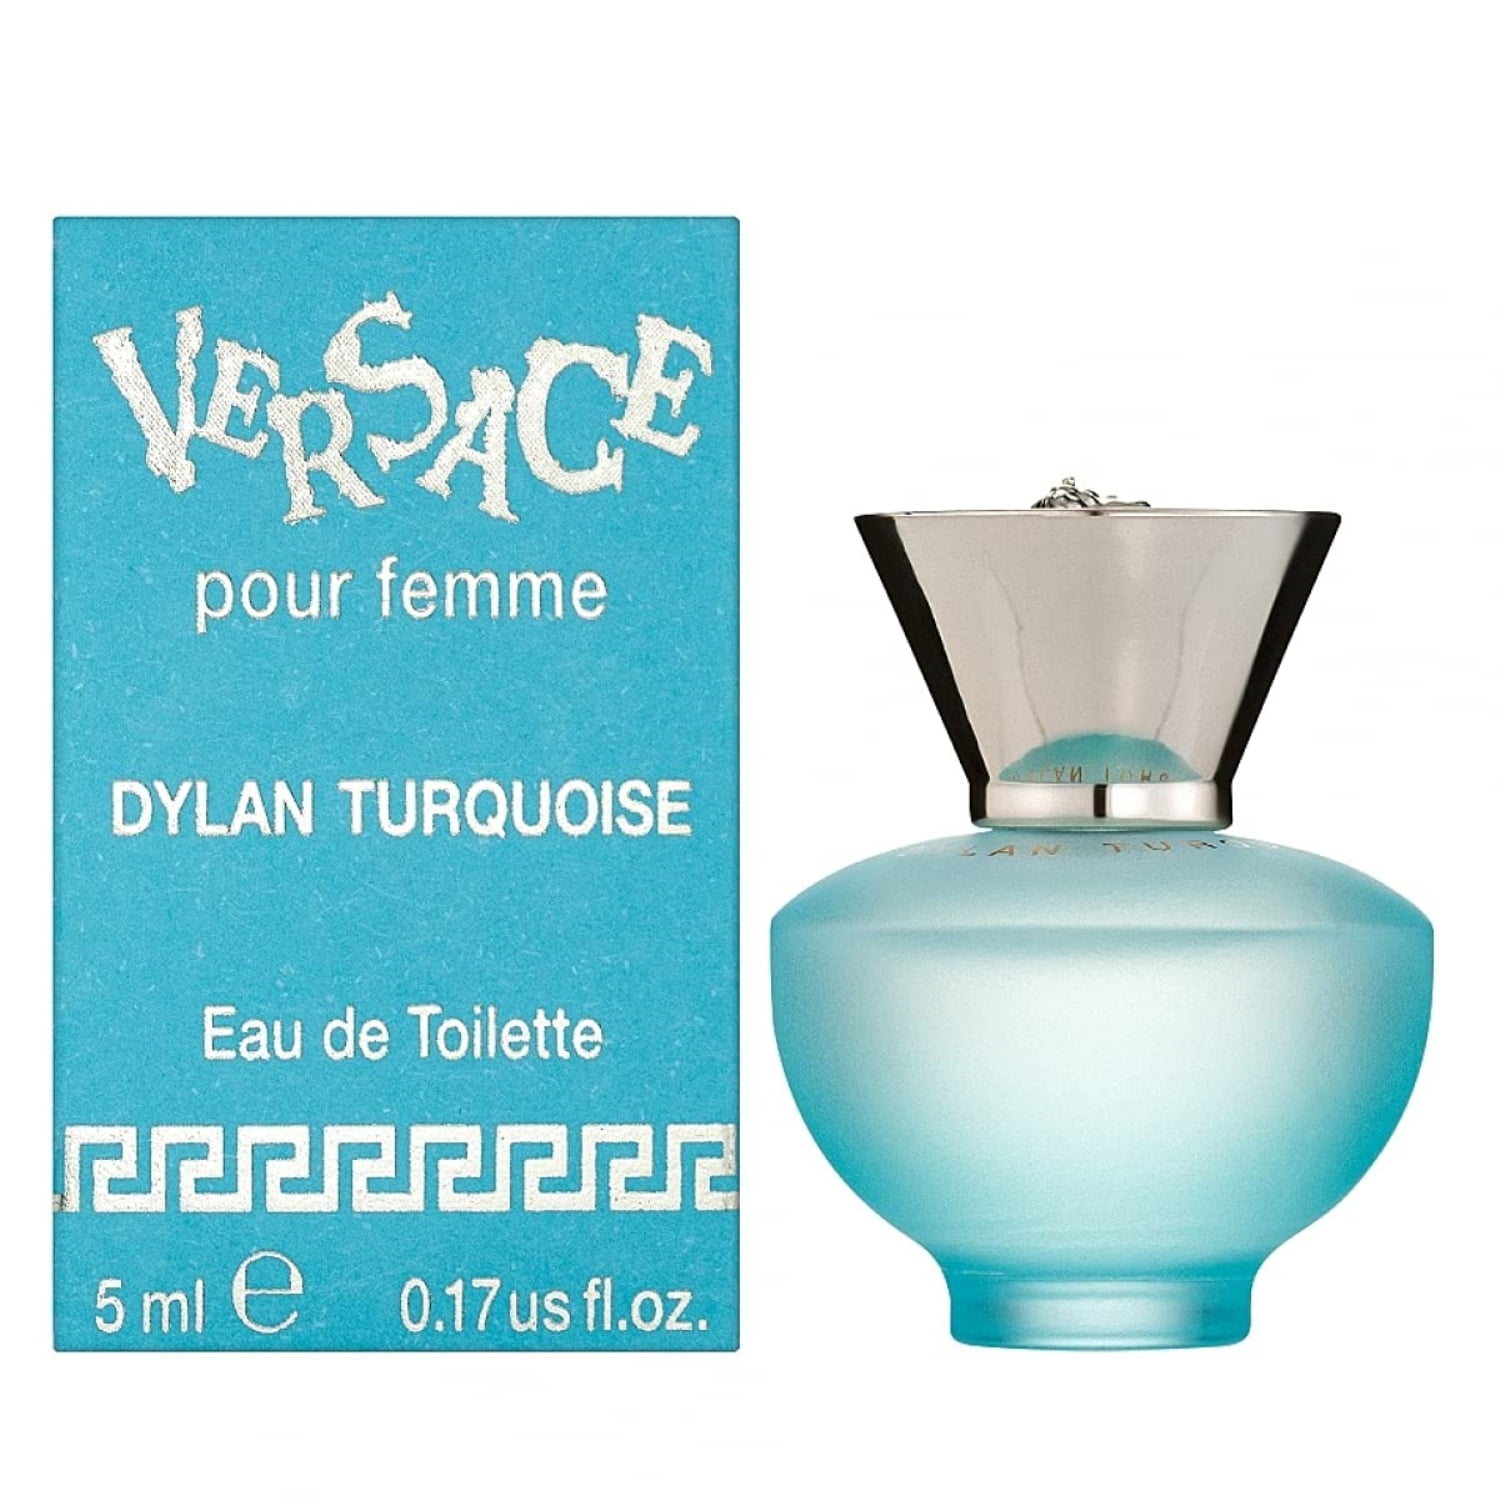 Versace Dylan Turquoise eau de toilette for women 100 ml + shower gel 100 ml  + body gel 100 ml + eau de toilette 5 ml, gift set for women - VMD  parfumerie - drogerie